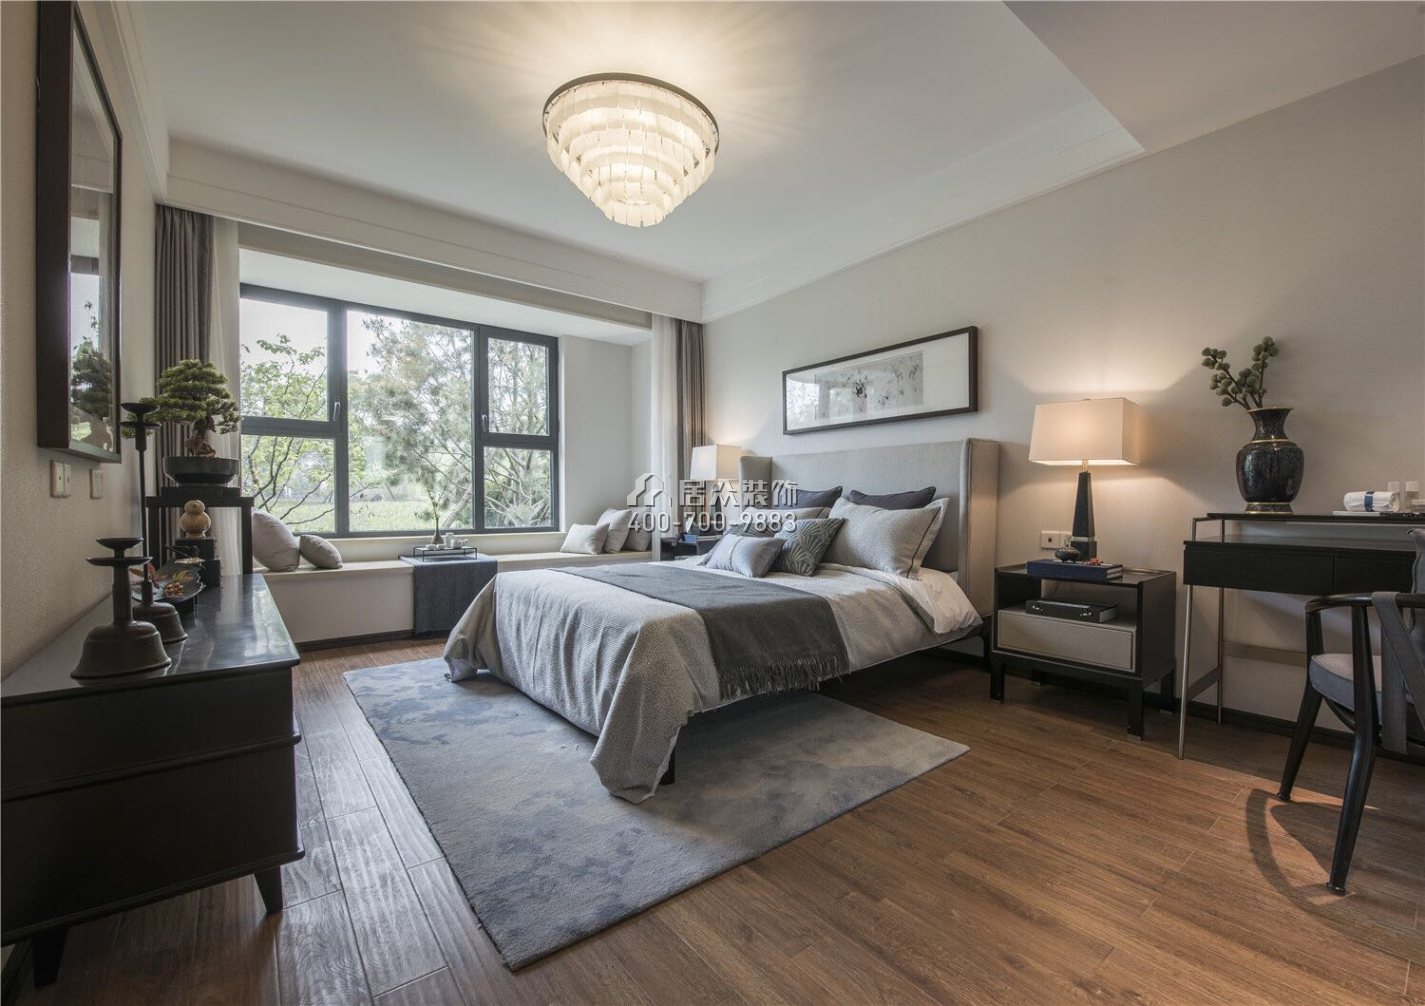 德景园120平方米中式风格平层户型卧室装修效果图